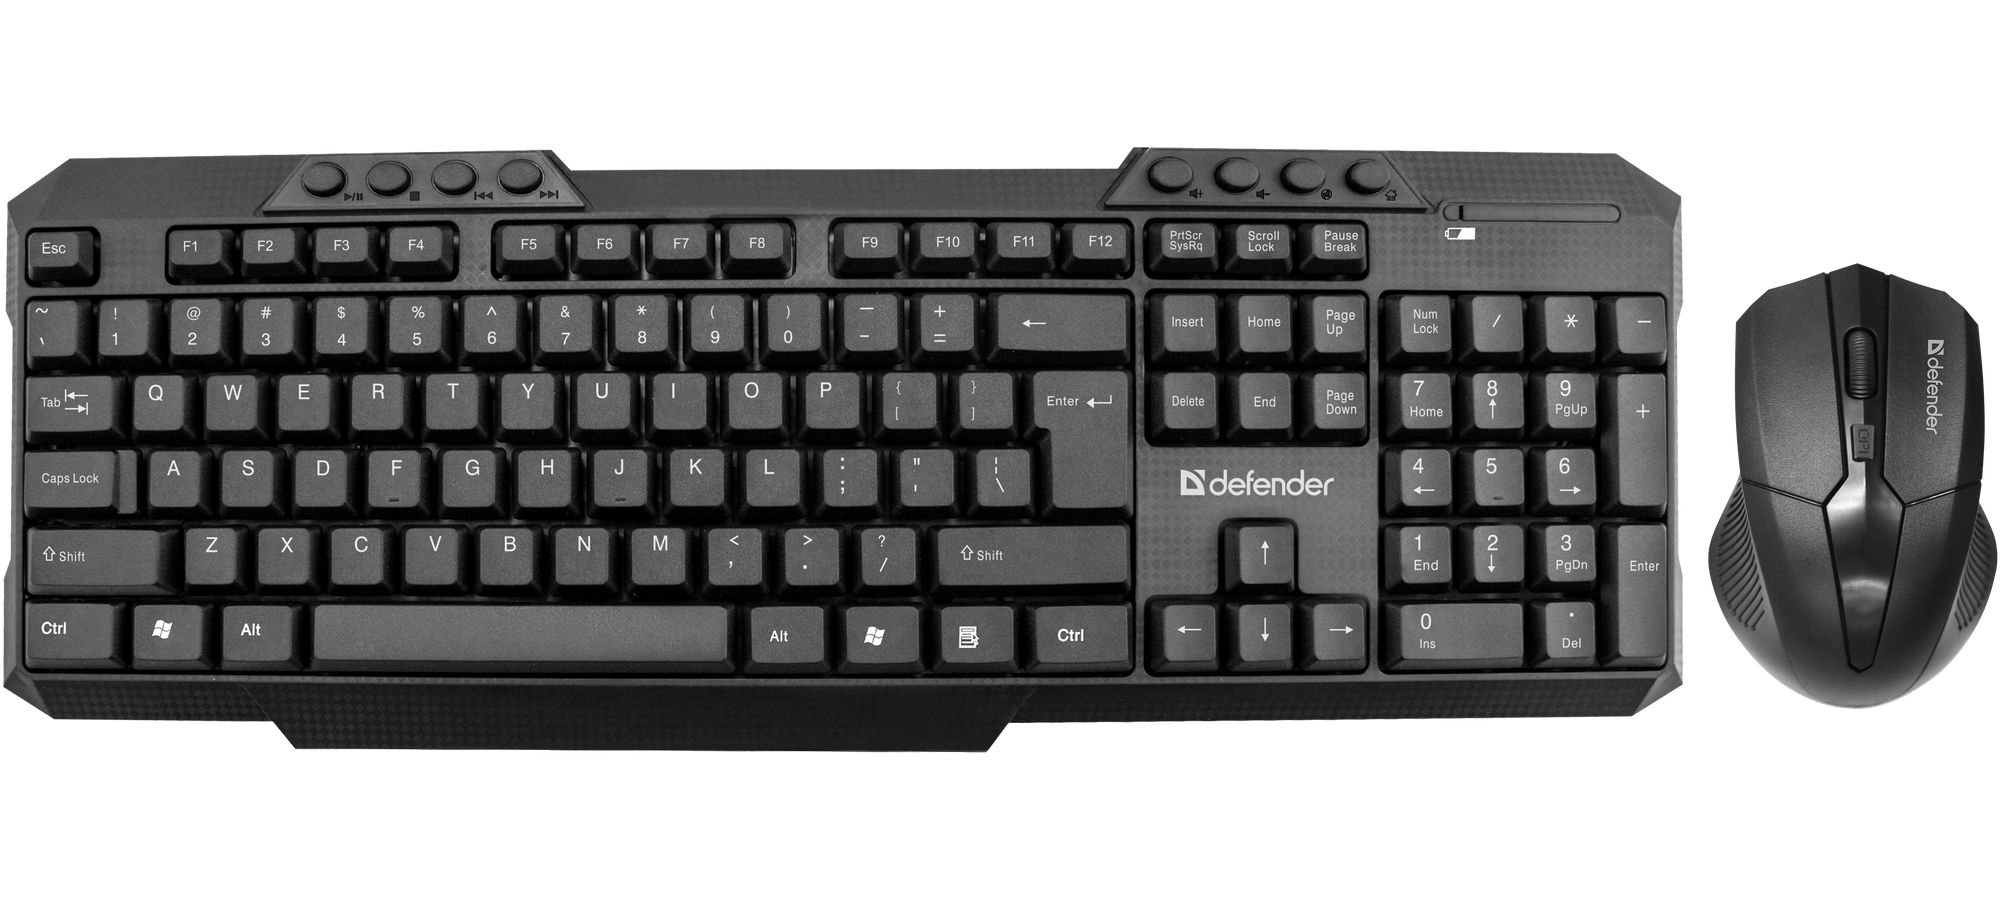 Набор клавиатура + мышь Defender JAKARTA C-805 (45804) комплект мыши и клавиатуры defender jakarta c 805 wireless 45804